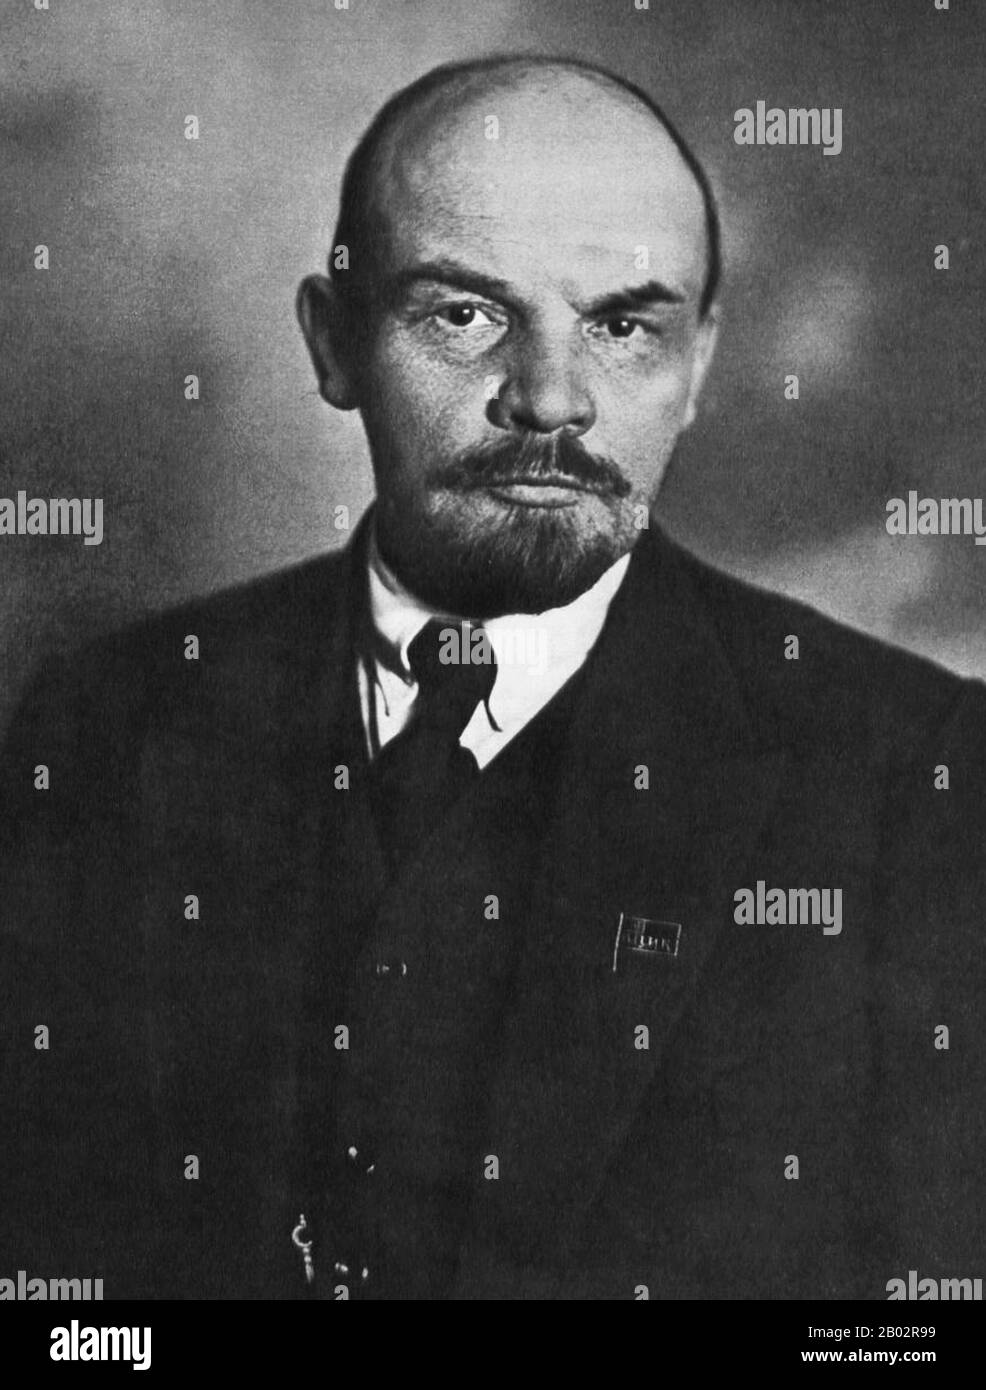 Vladimir Ilyich Lenin, nato Vladimir Ilyich Ulyanov (22 aprile 1870 – 21 gennaio 1924), è stato un . Lenin fu il capo della Repubblica socialista federativa sovietica russa dal 1917, e poi contemporaneamente come Premier dell'Unione Sovietica dal 1922, fino alla sua morte. Sotto la sua amministrazione, l'impero russo si disintegrò e fu sostituito dall'Unione Sovietica, uno stato costituzionalmente socialista monopartitico; tutta la ricchezza, compresi terra, industria e affari, fu nazionalizzata. Basato nel marxismo, i suoi contributi teorici a ma Foto Stock